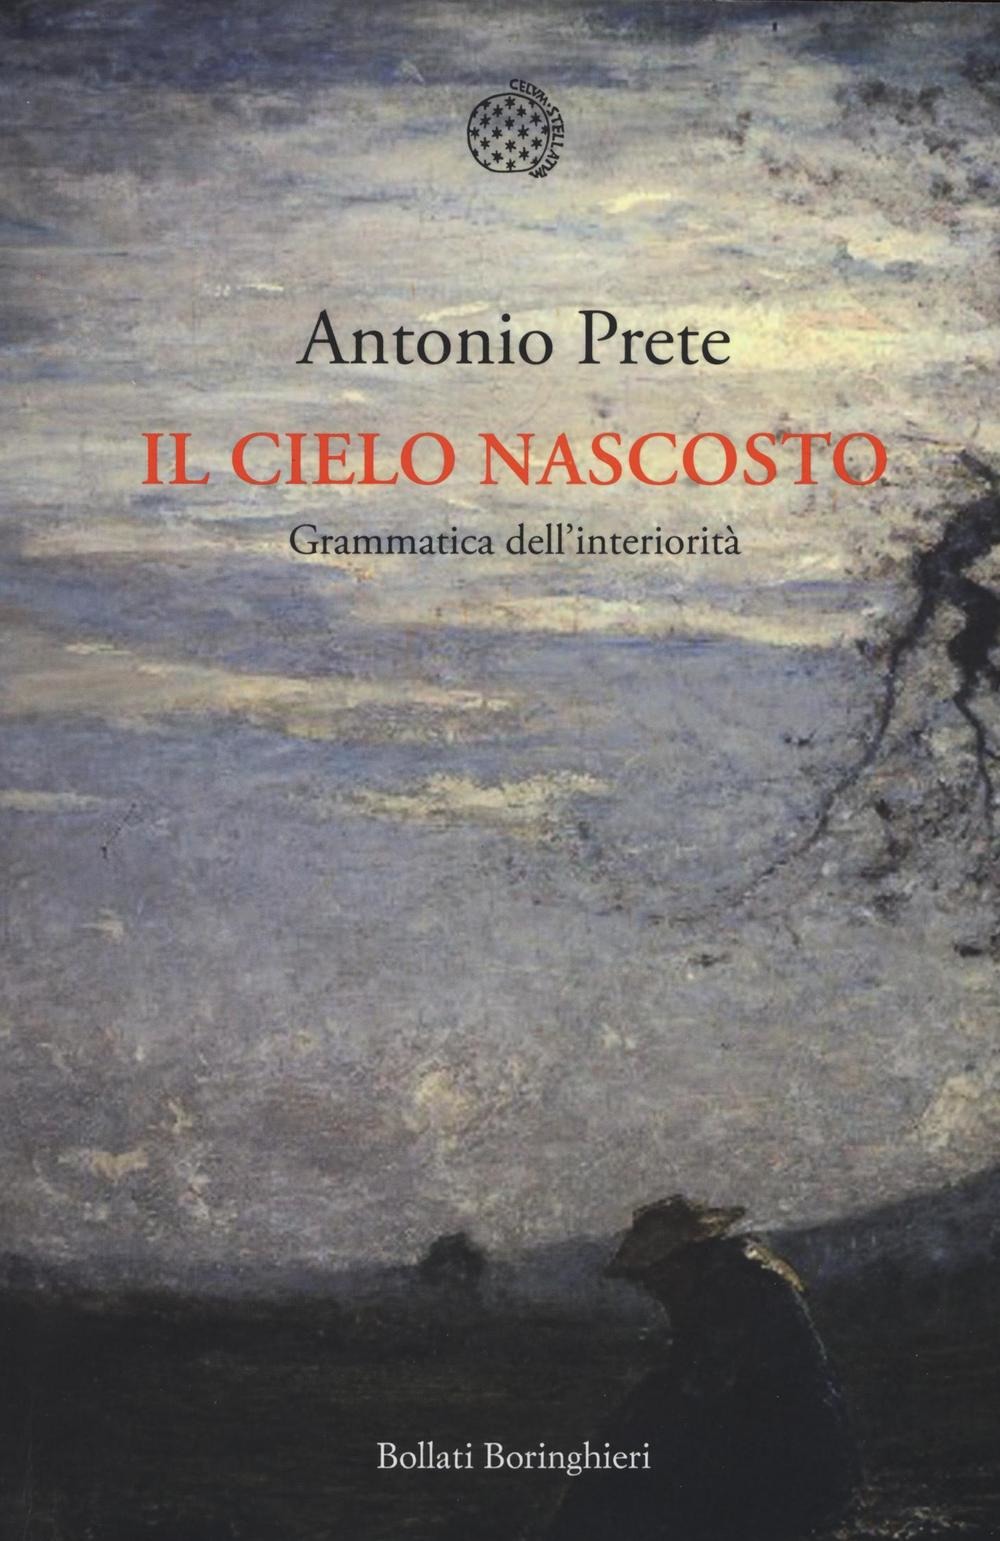 Antonio Prete: Il cielo nascosto